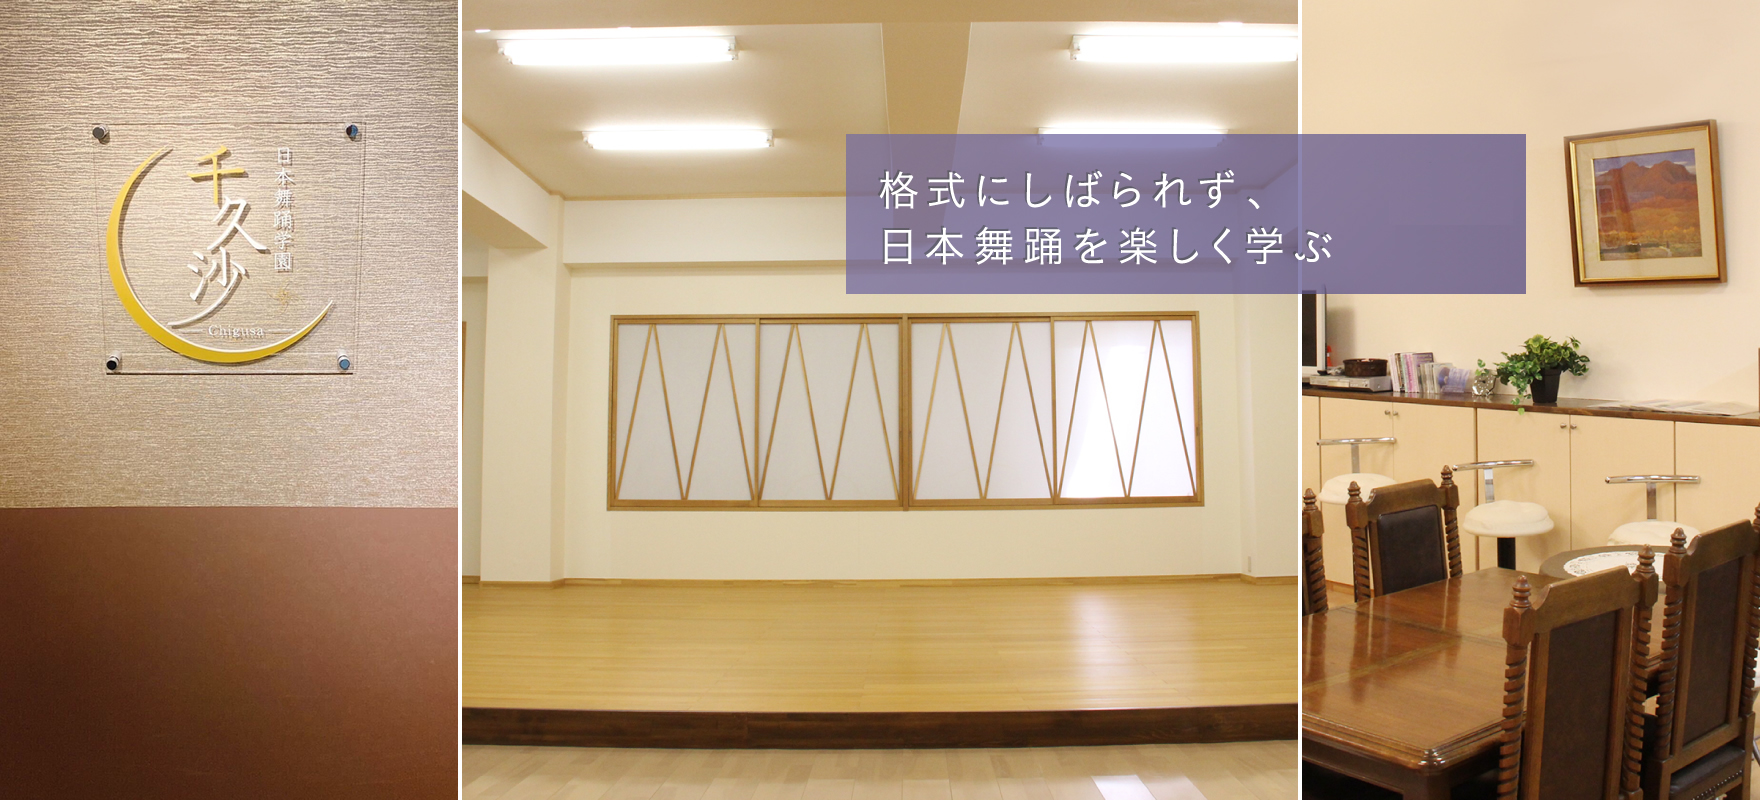 格式にしばられず、日本舞踊を楽しく学ぶ